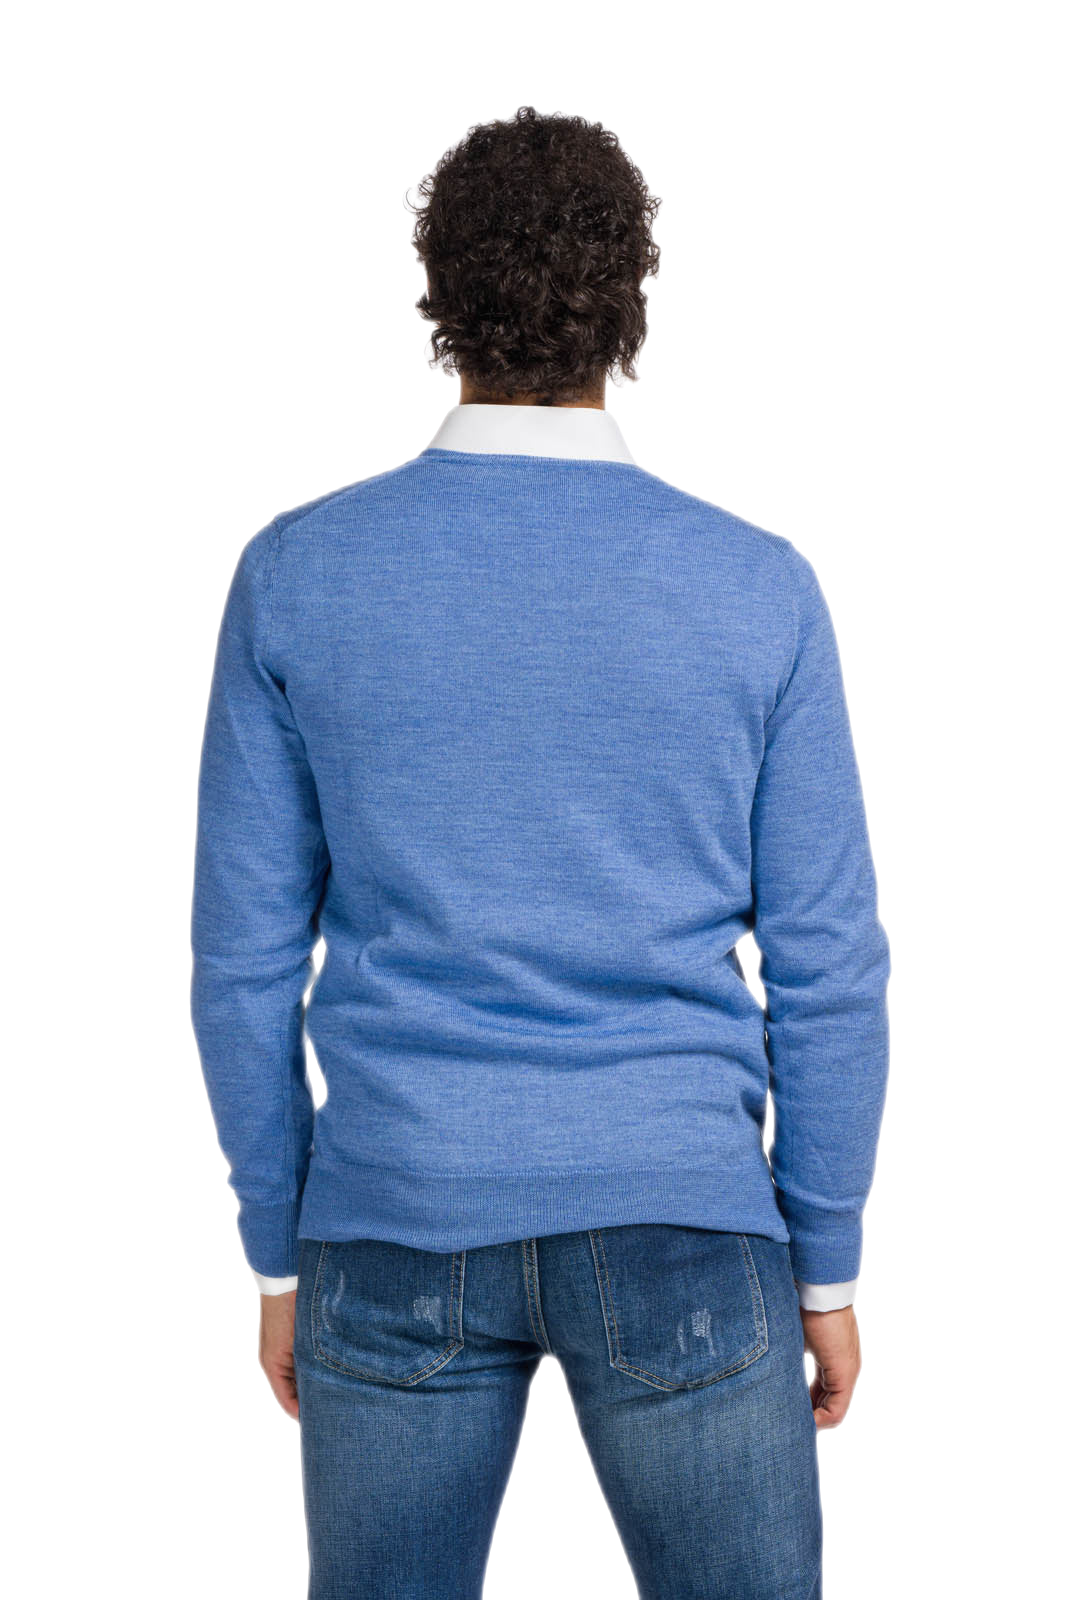 retro maglione uomo scollo a V azzurro